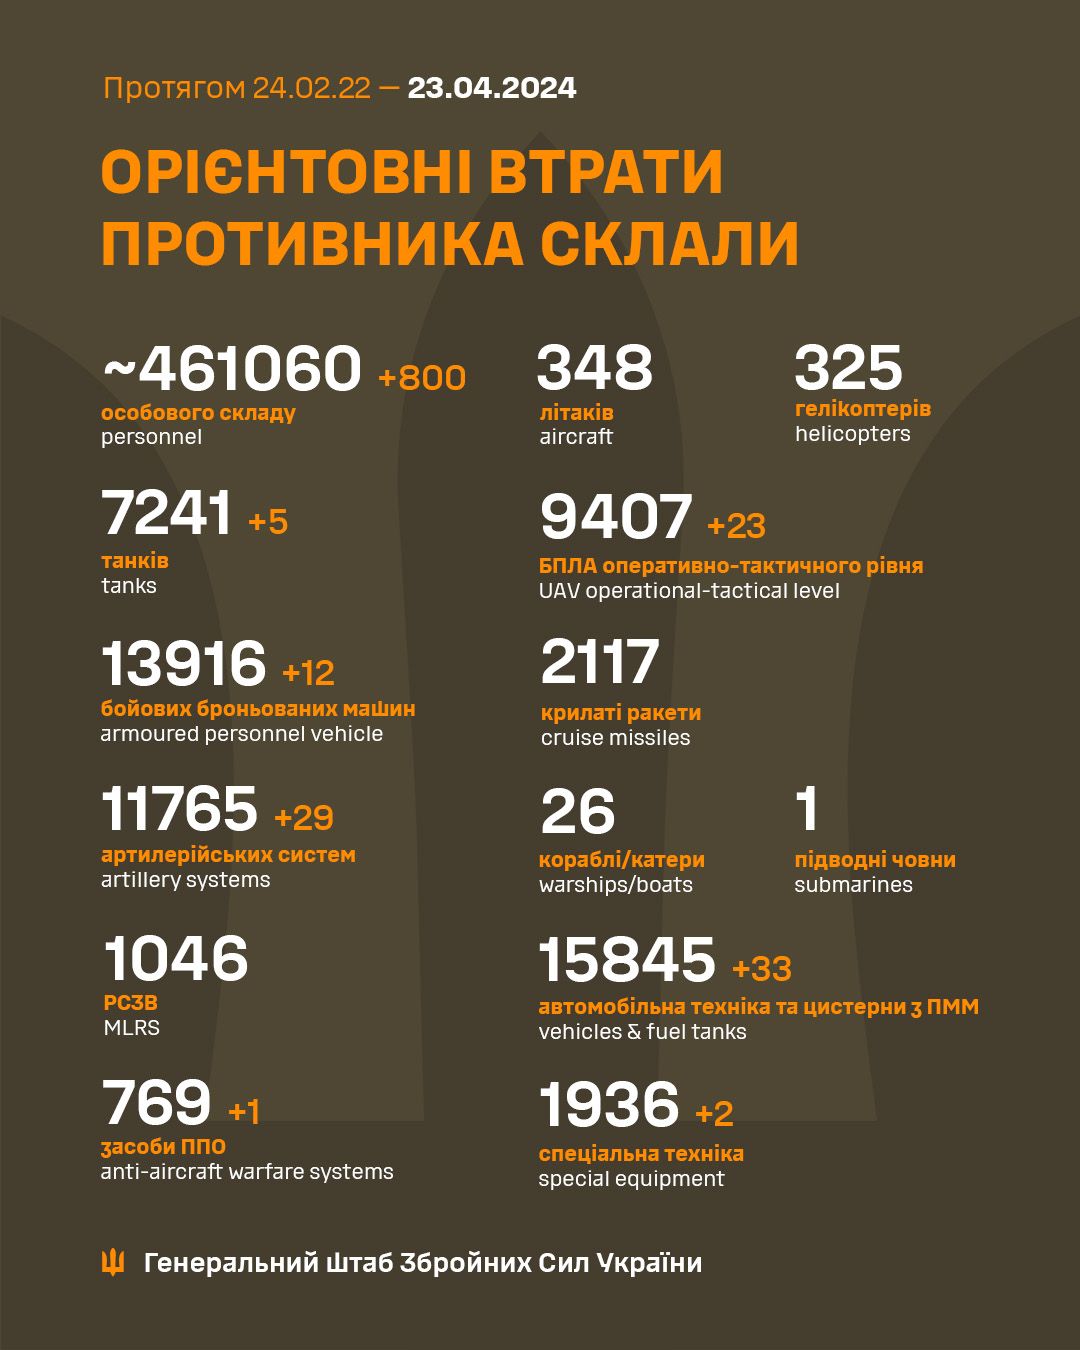 Генштаб ЗСУ звітує про втрати противника на 790-ту добу  повномасштабної російсько-української війни.